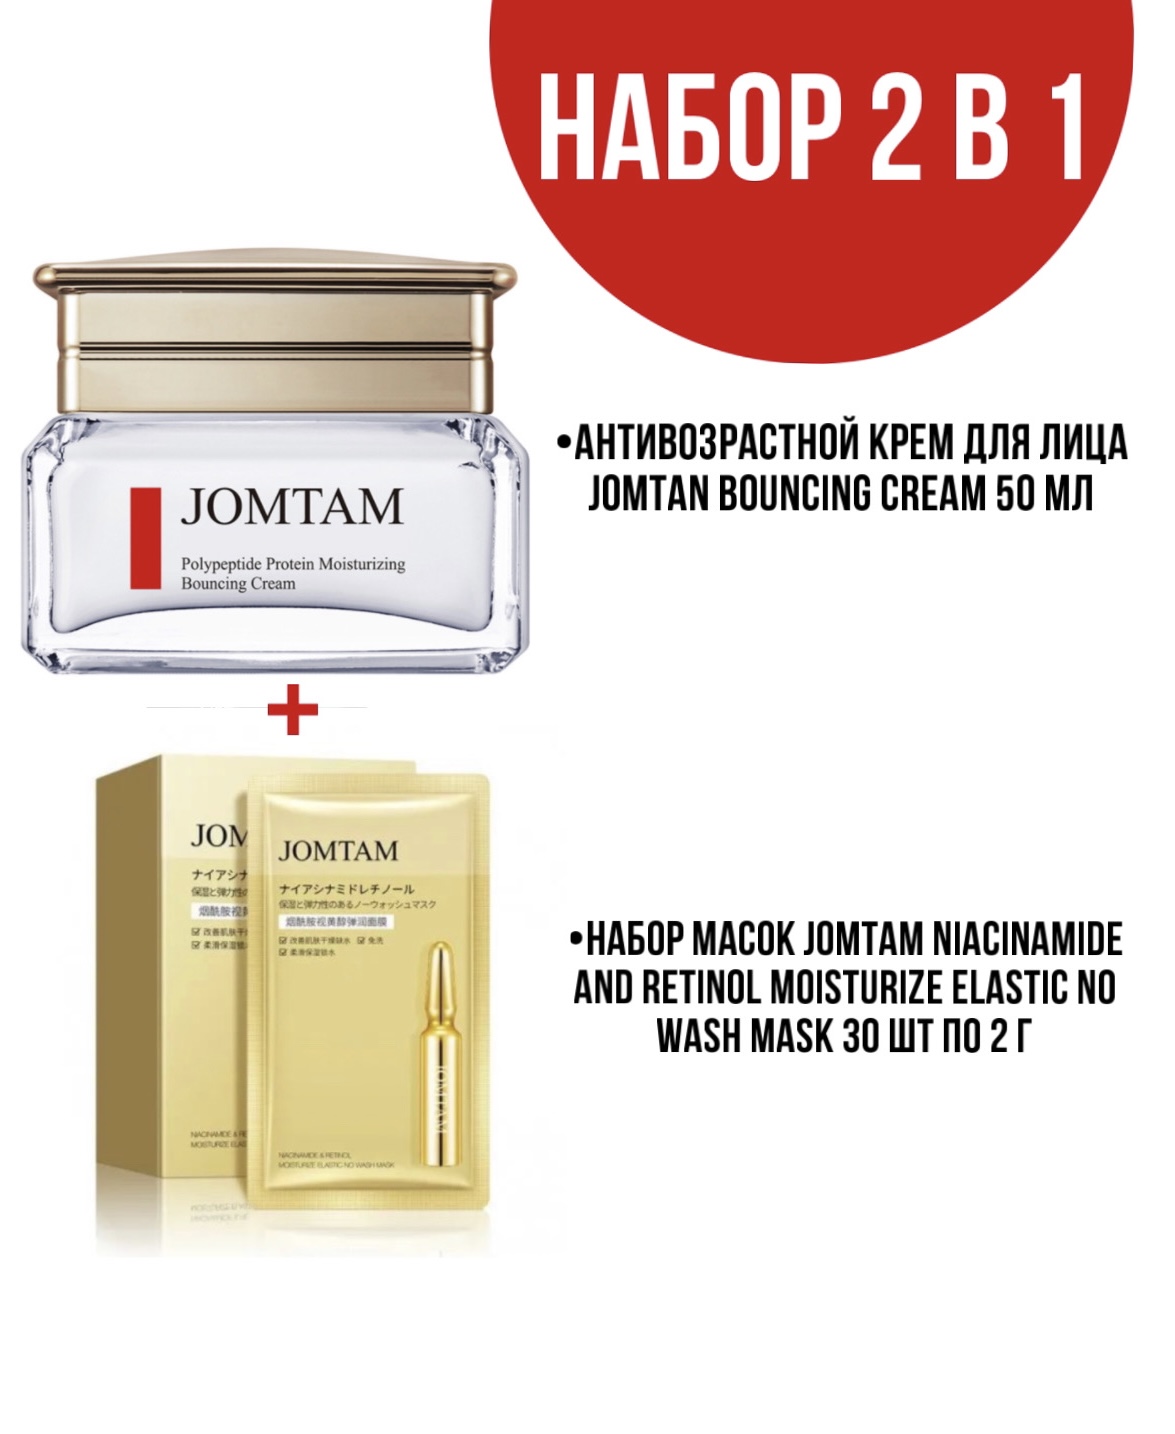 Крем Jomtam Bouncing Cream для лица 50 мл и набор масок Jomtam Niacinamide 30 шт по 2 г девять рассказов